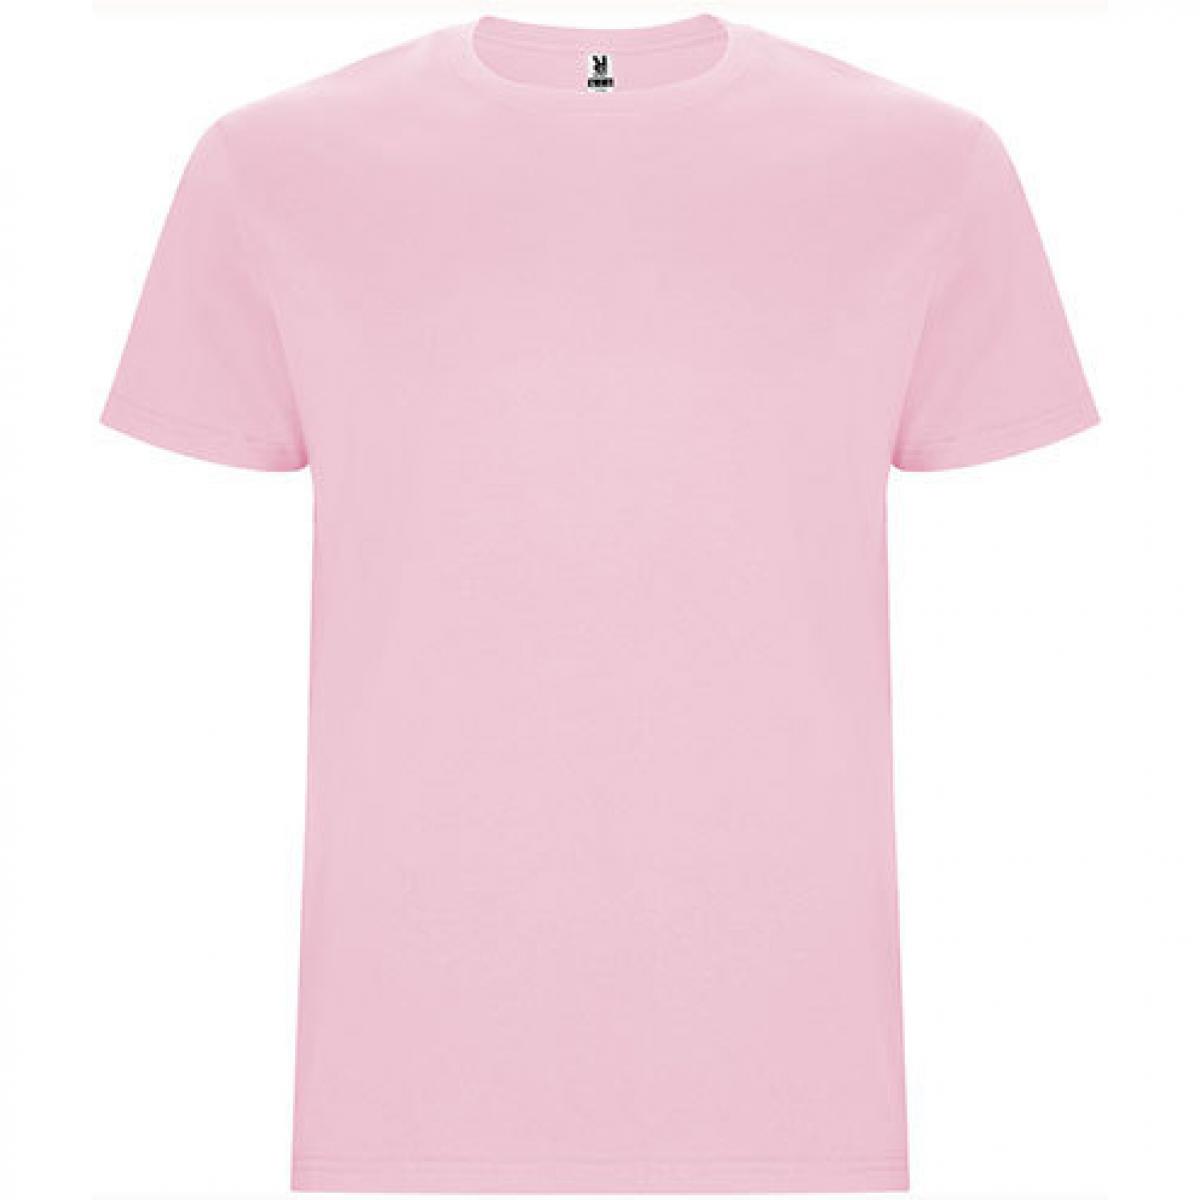 Hersteller: Roly Herstellernummer: CA6681 Artikelbezeichnung: Stafford T-Shirt - Doppellagiger Rundhalskragen Farbe: Light Pink 48